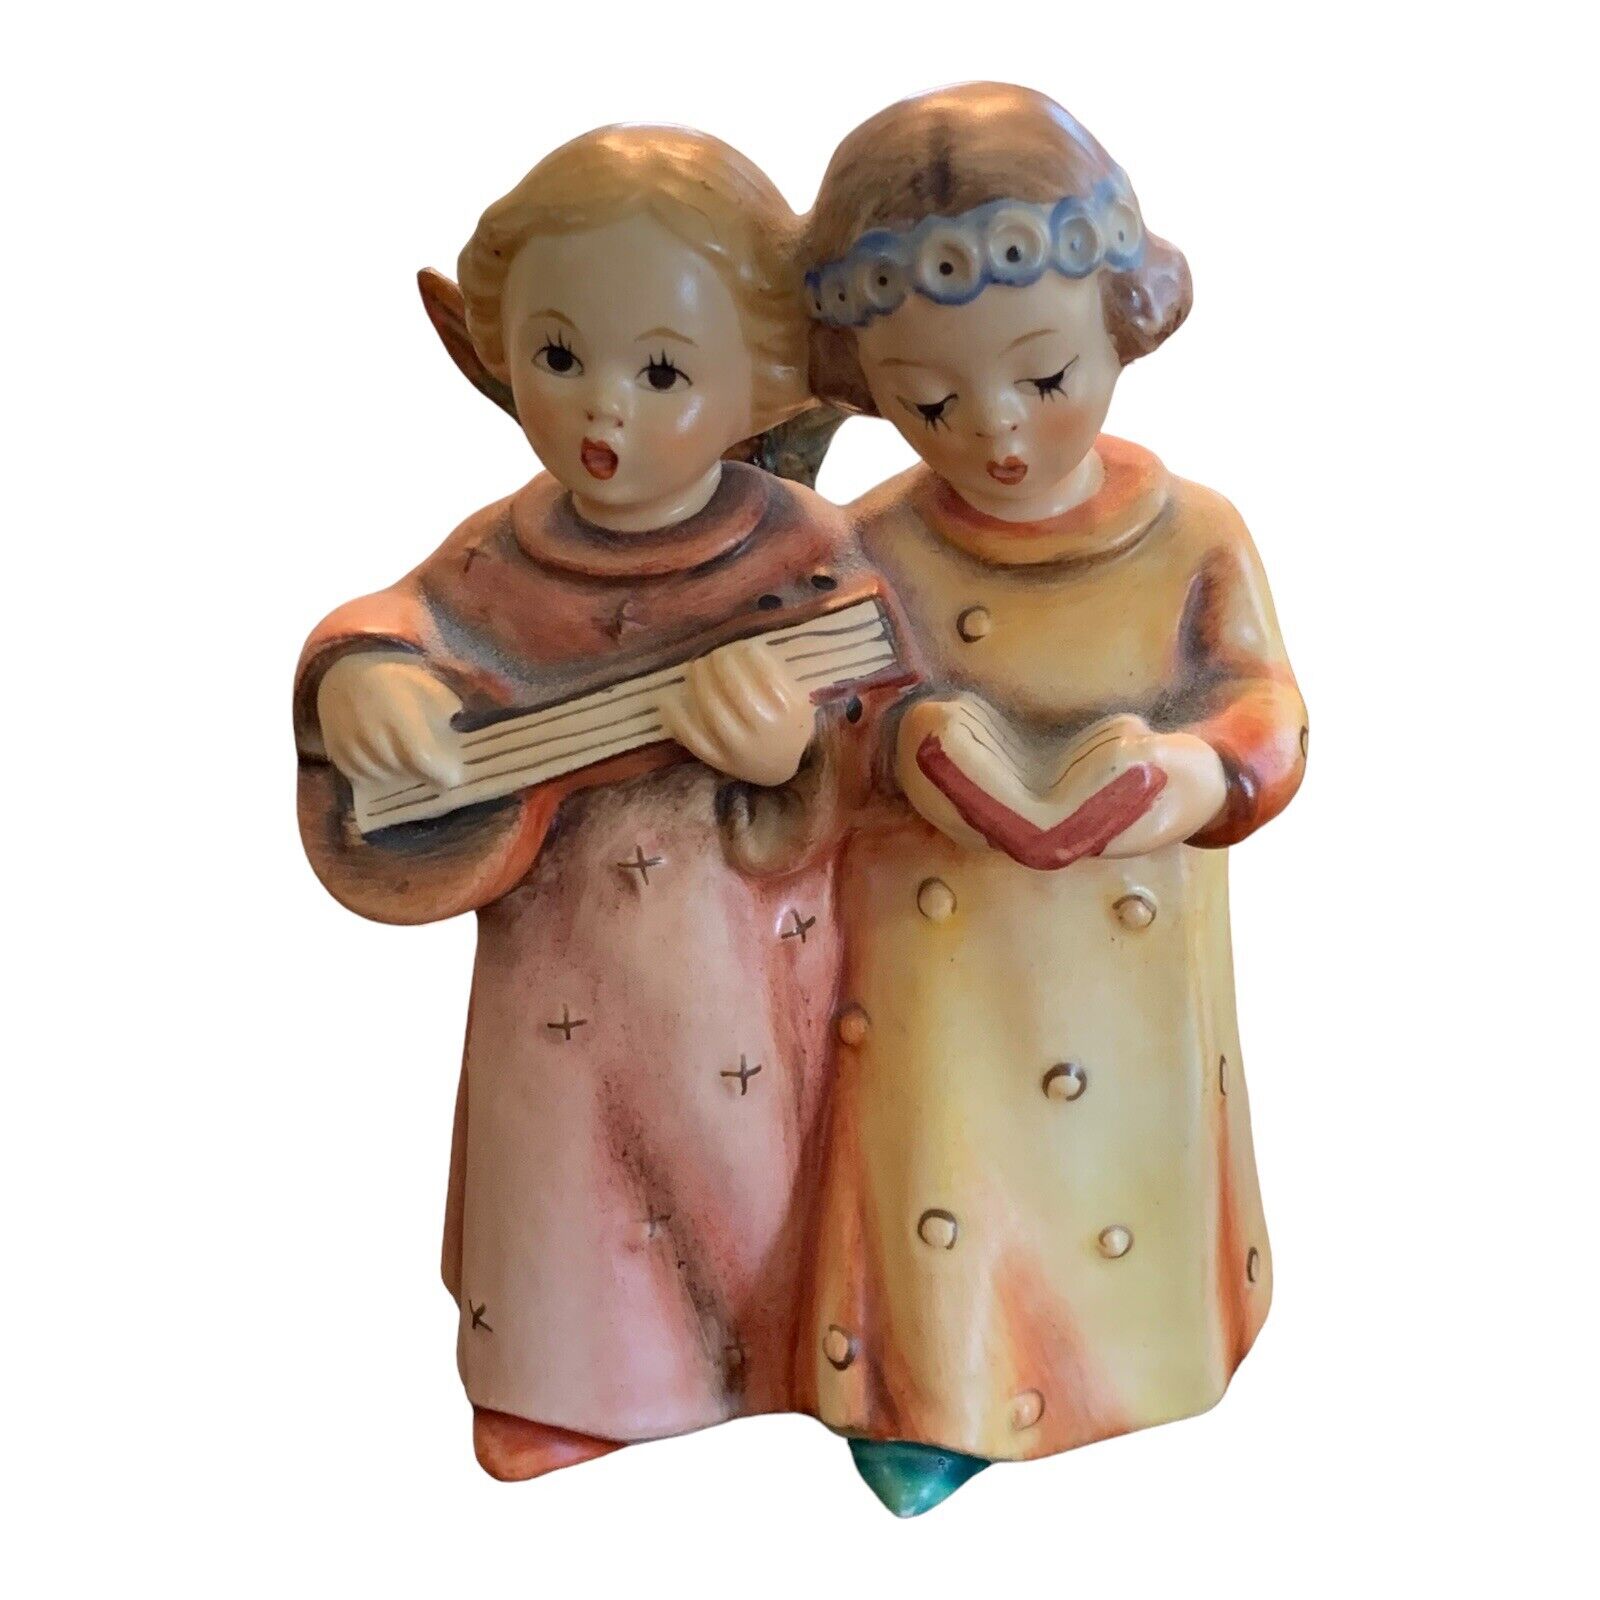 Goebel Hummel “Angelic Song” Vintage 4” Tall Figurine #144